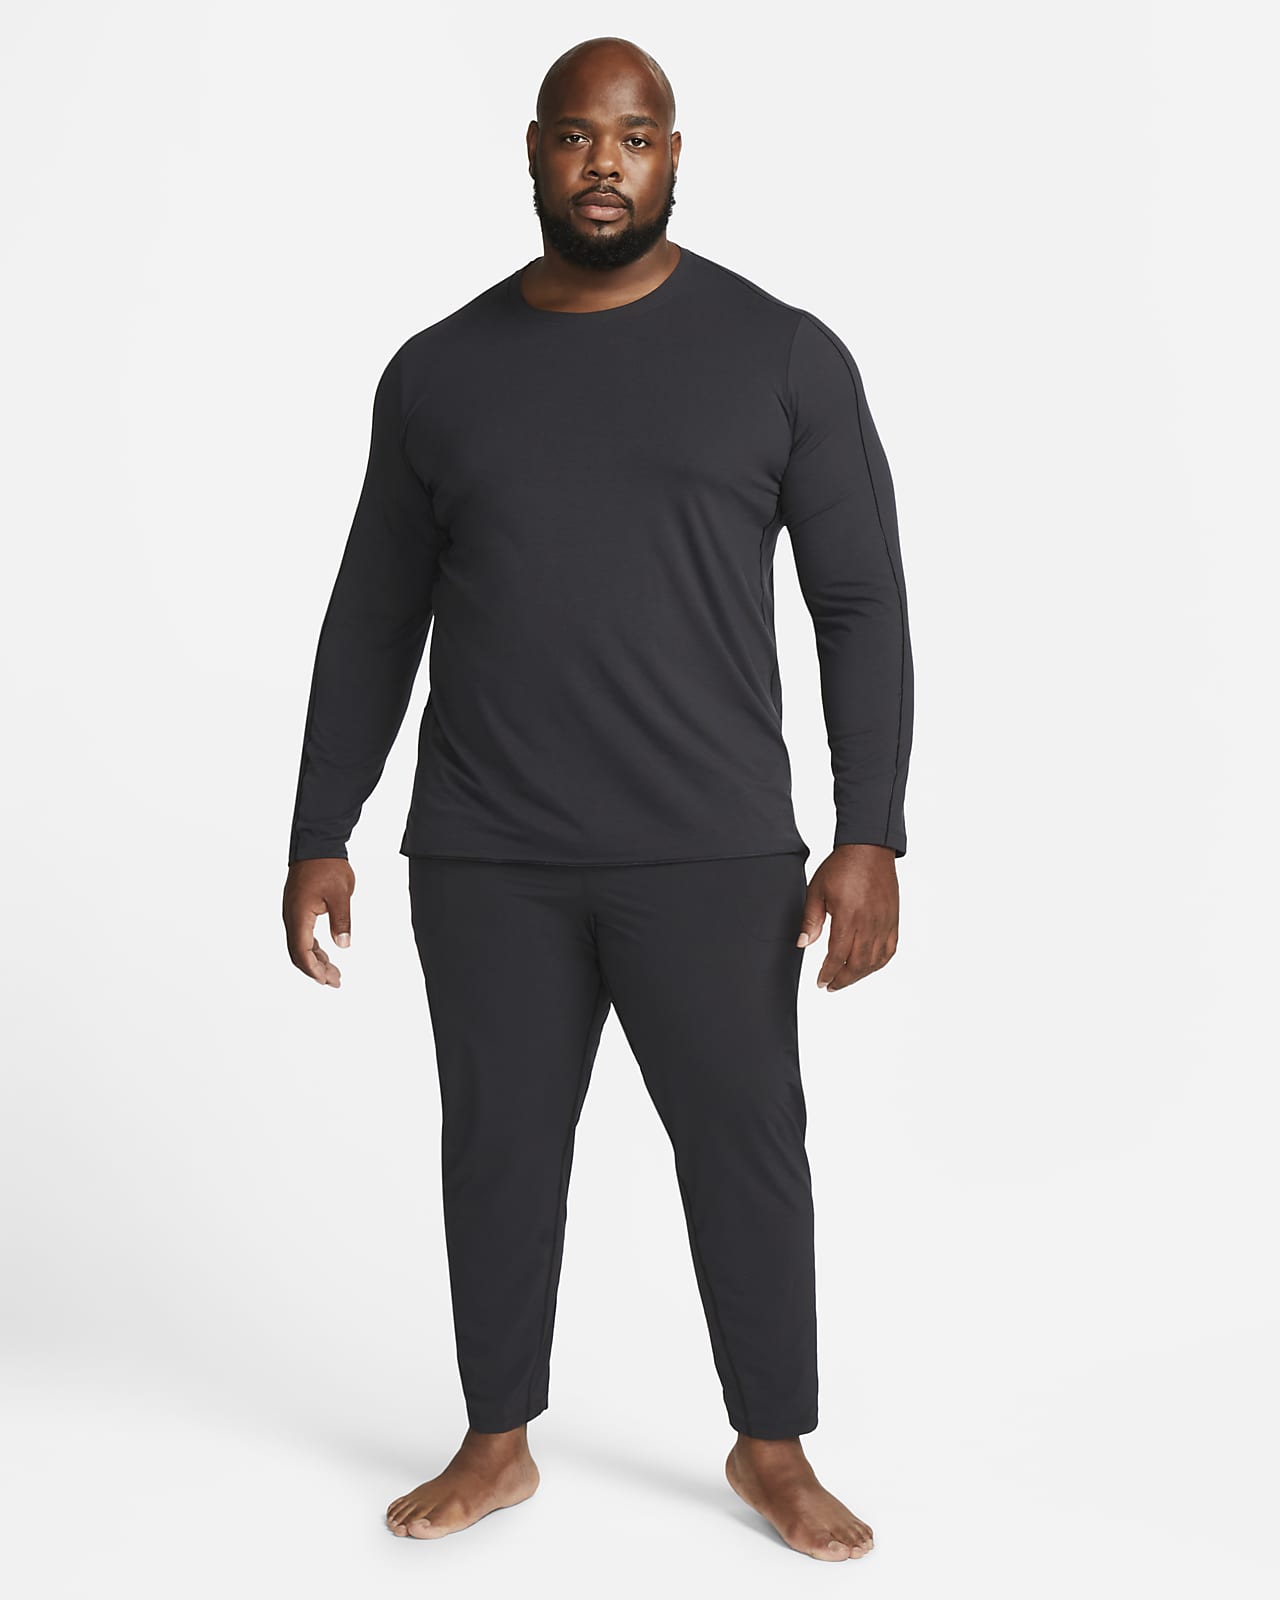 Mens Nike Yoga Dri Fit Training T-Shirt Size L Black DM7825 010